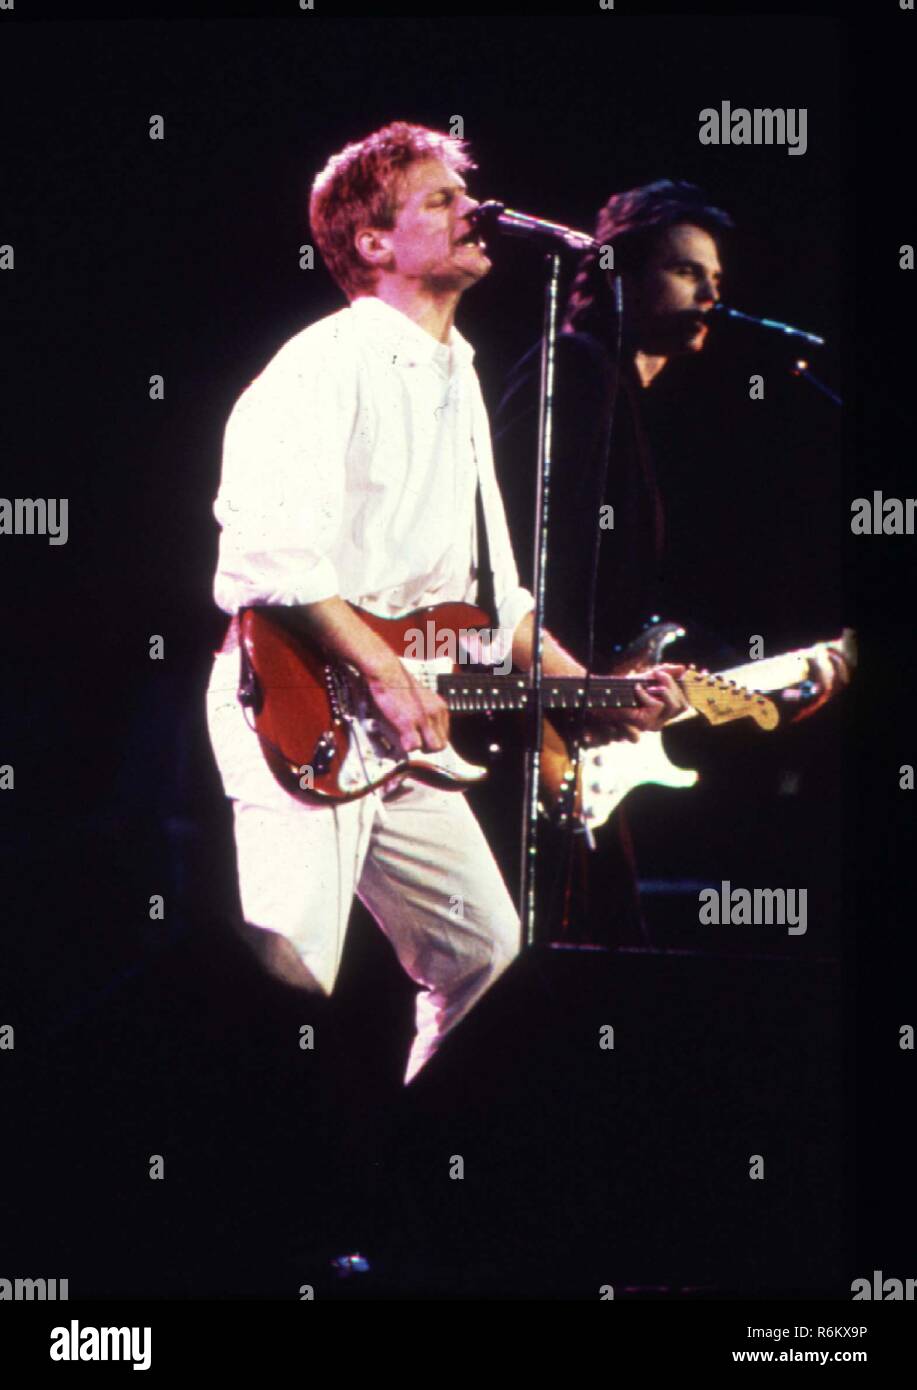 Foto di archivio.Londra. Bryan Adams performing live sul palco negli anni novanta.Legendées 30 Novembre 2018.LMK11-SL23-MB2040-01118 Credito: punto di riferimento Media / MediaPunch Foto Stock